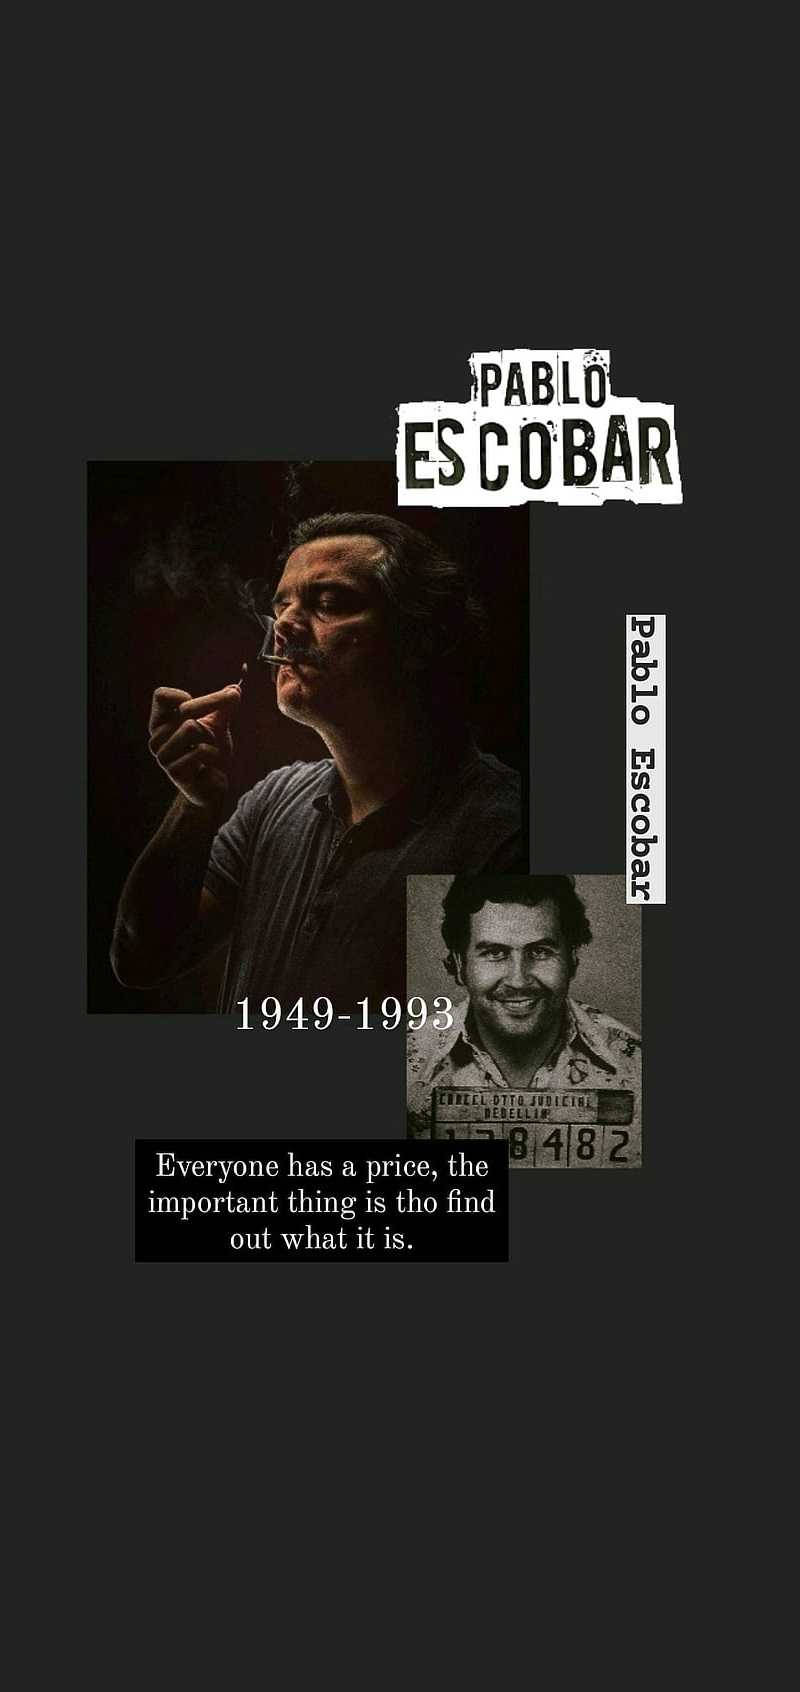 The Controversial Figure Pablo Escobar